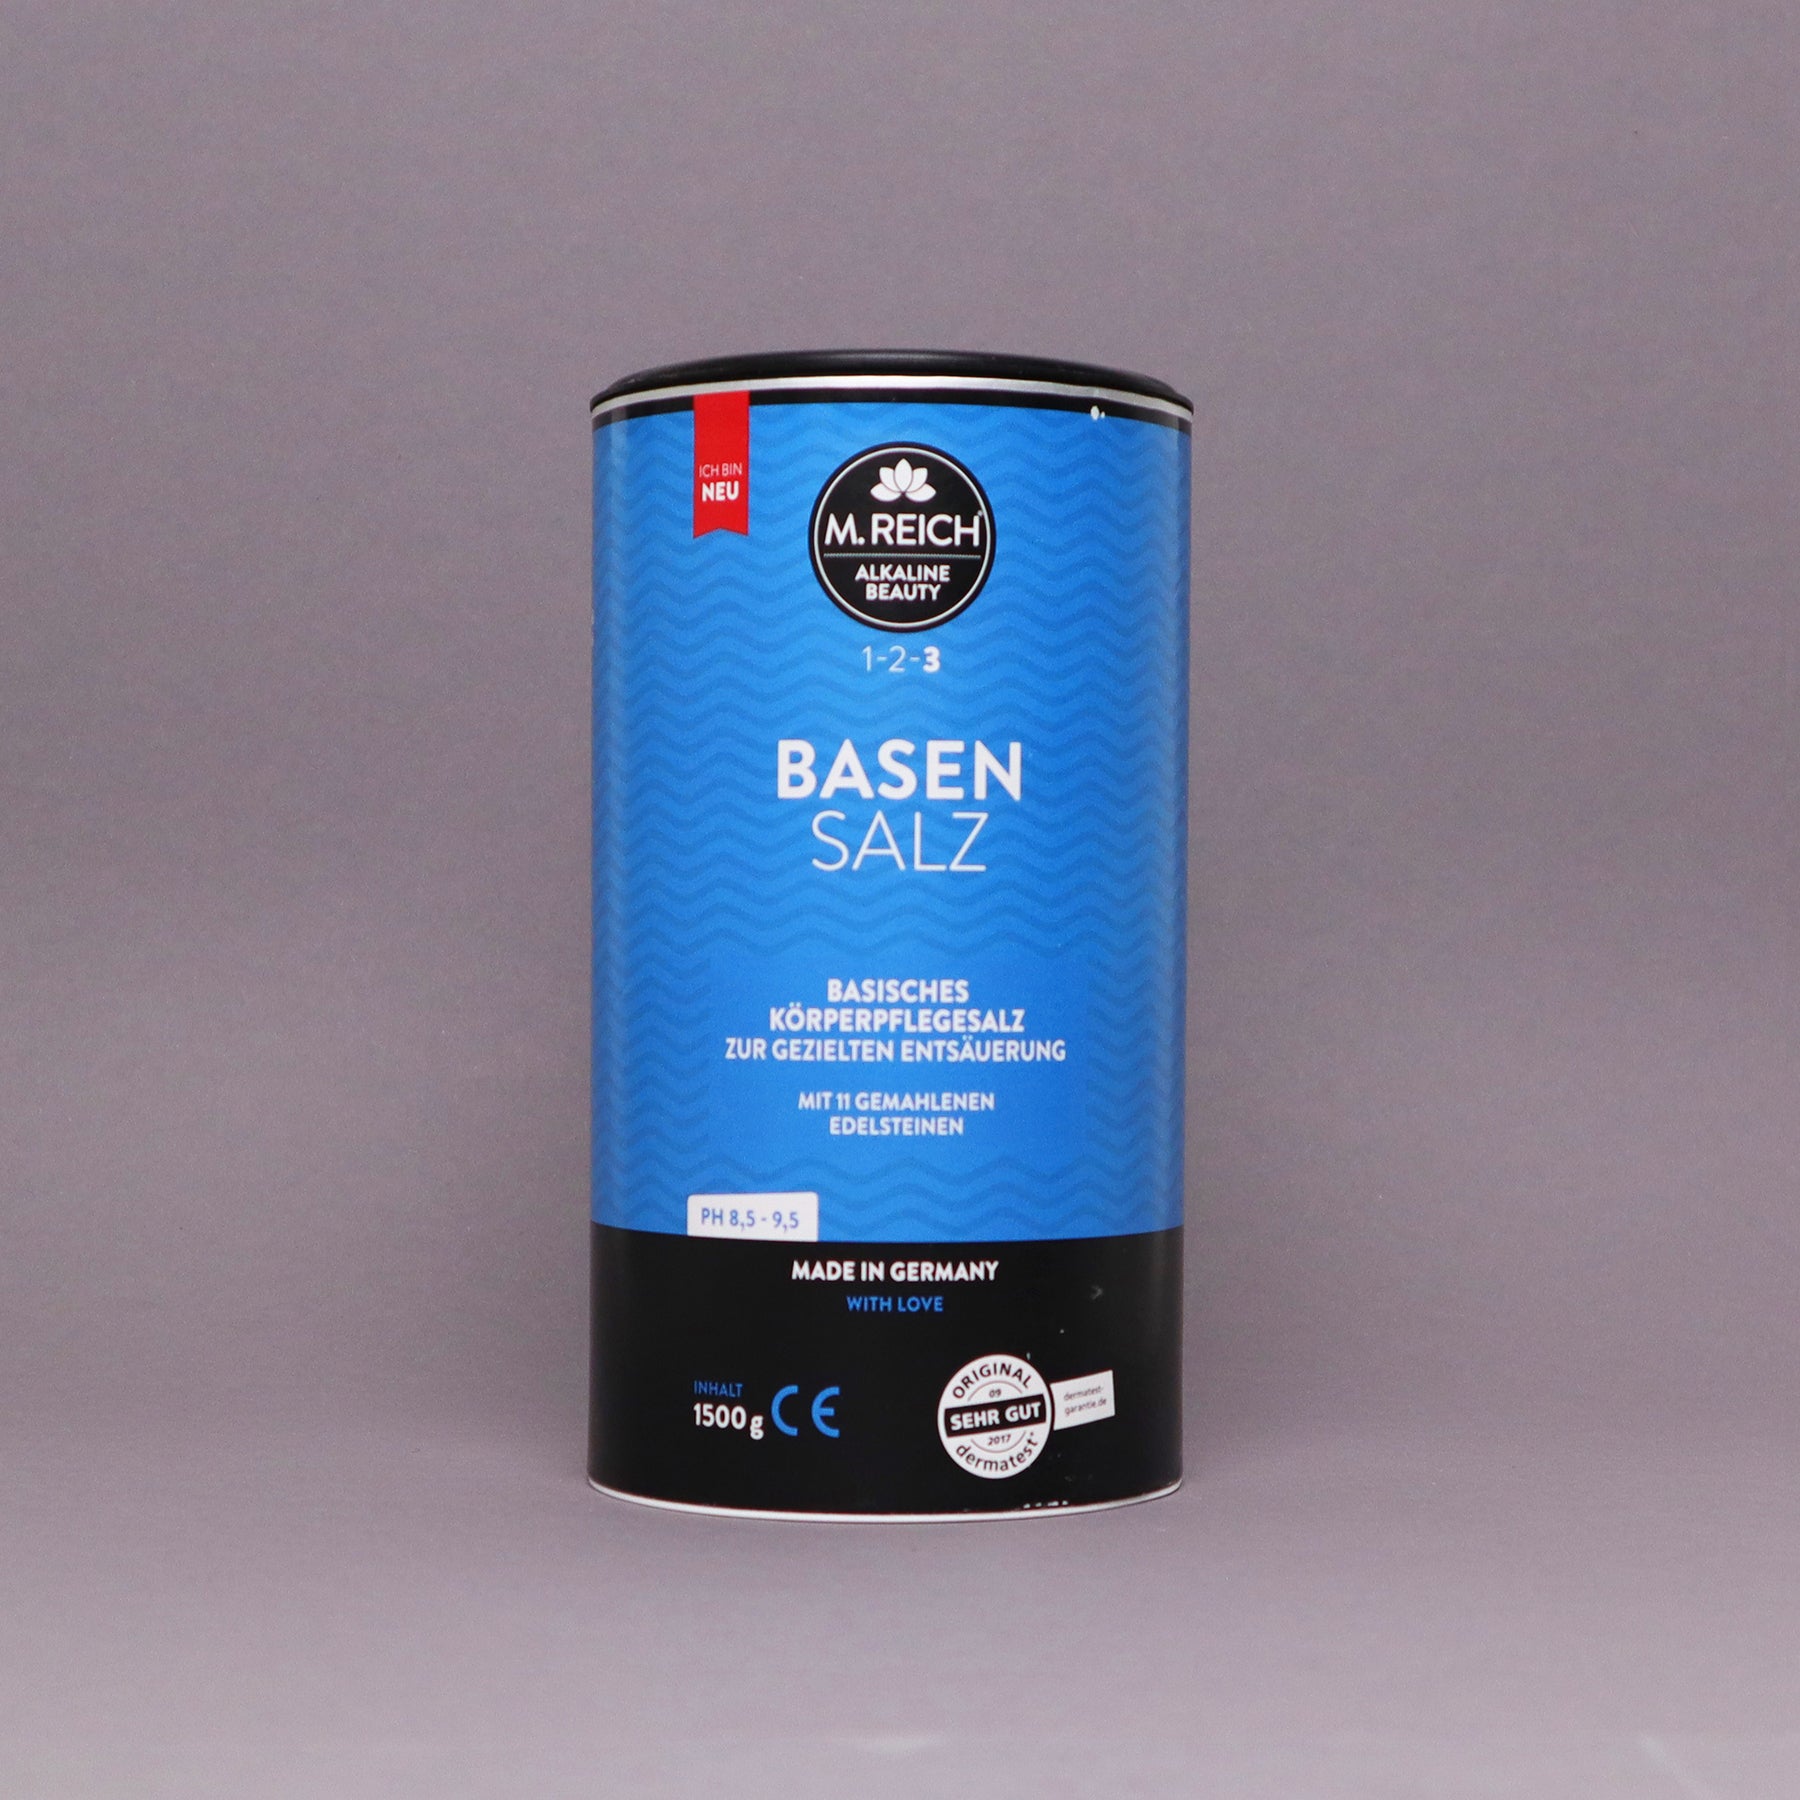 Base salt (various sizes), M. Reich